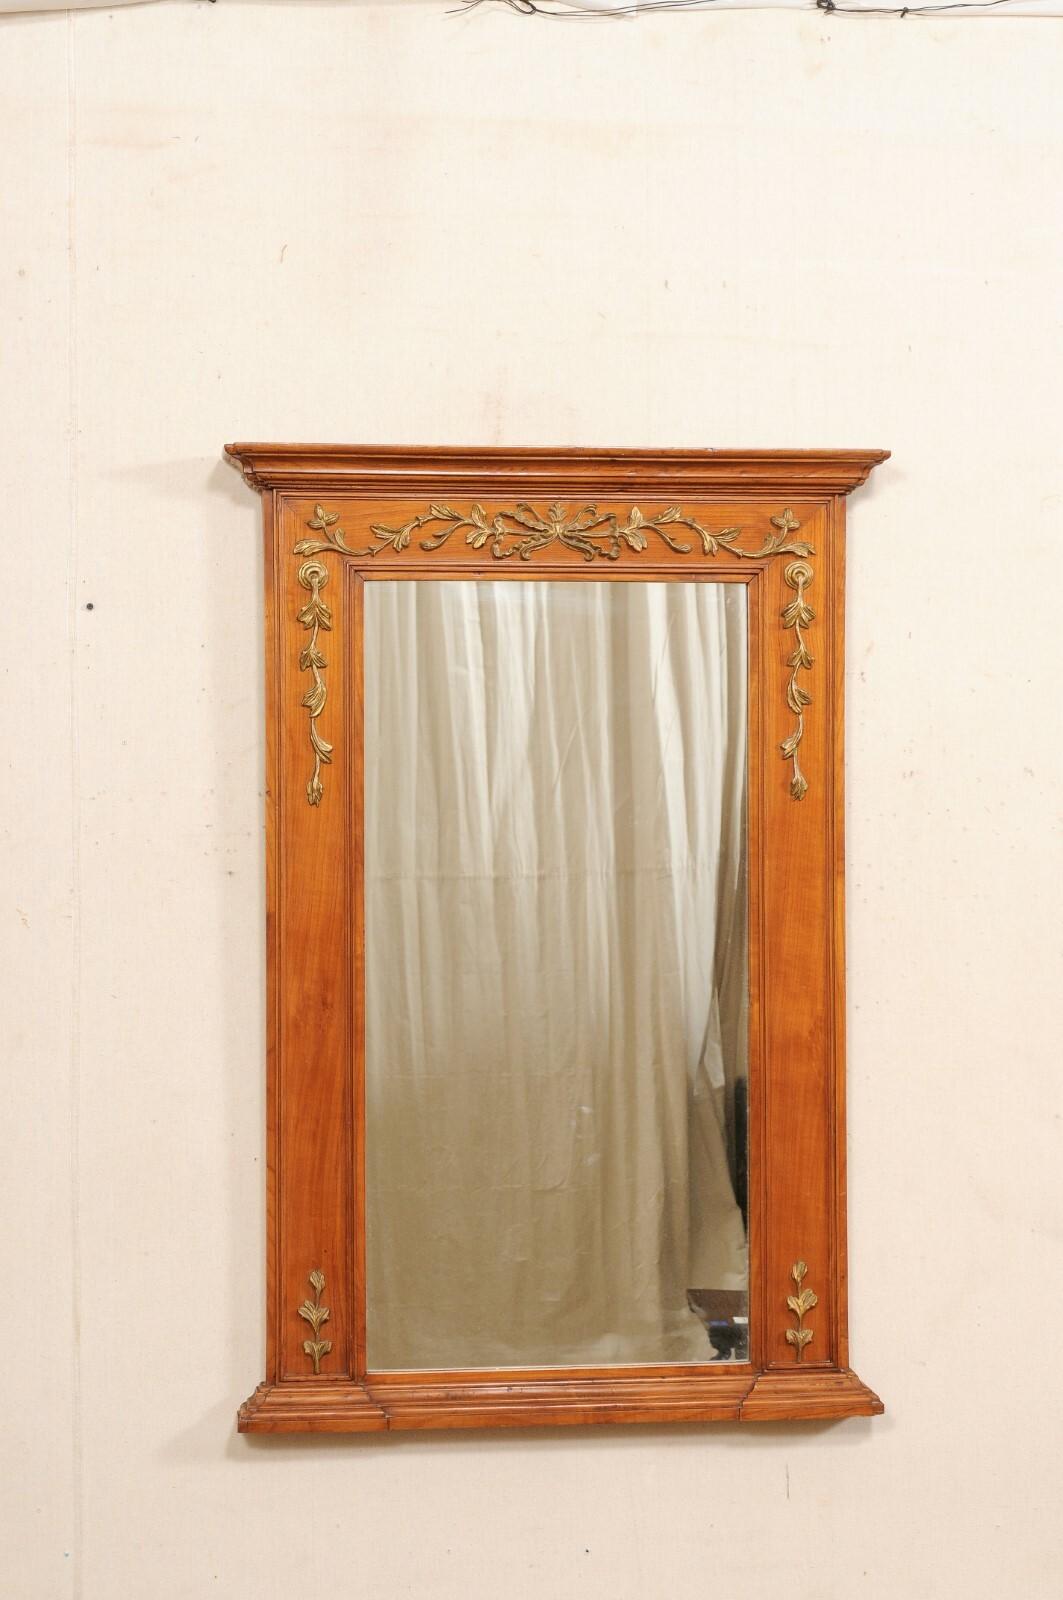 Ein französischer Spiegel aus geschnitztem Holz über dem Mantel aus dem frühen 20. Jahrhundert. Dieser antike Spiegel aus Frankreich hat eine Höhe von etwa 4 Fuß. Er hat eine rechteckige Form mit einem schön geformten oberen Gesims, und die